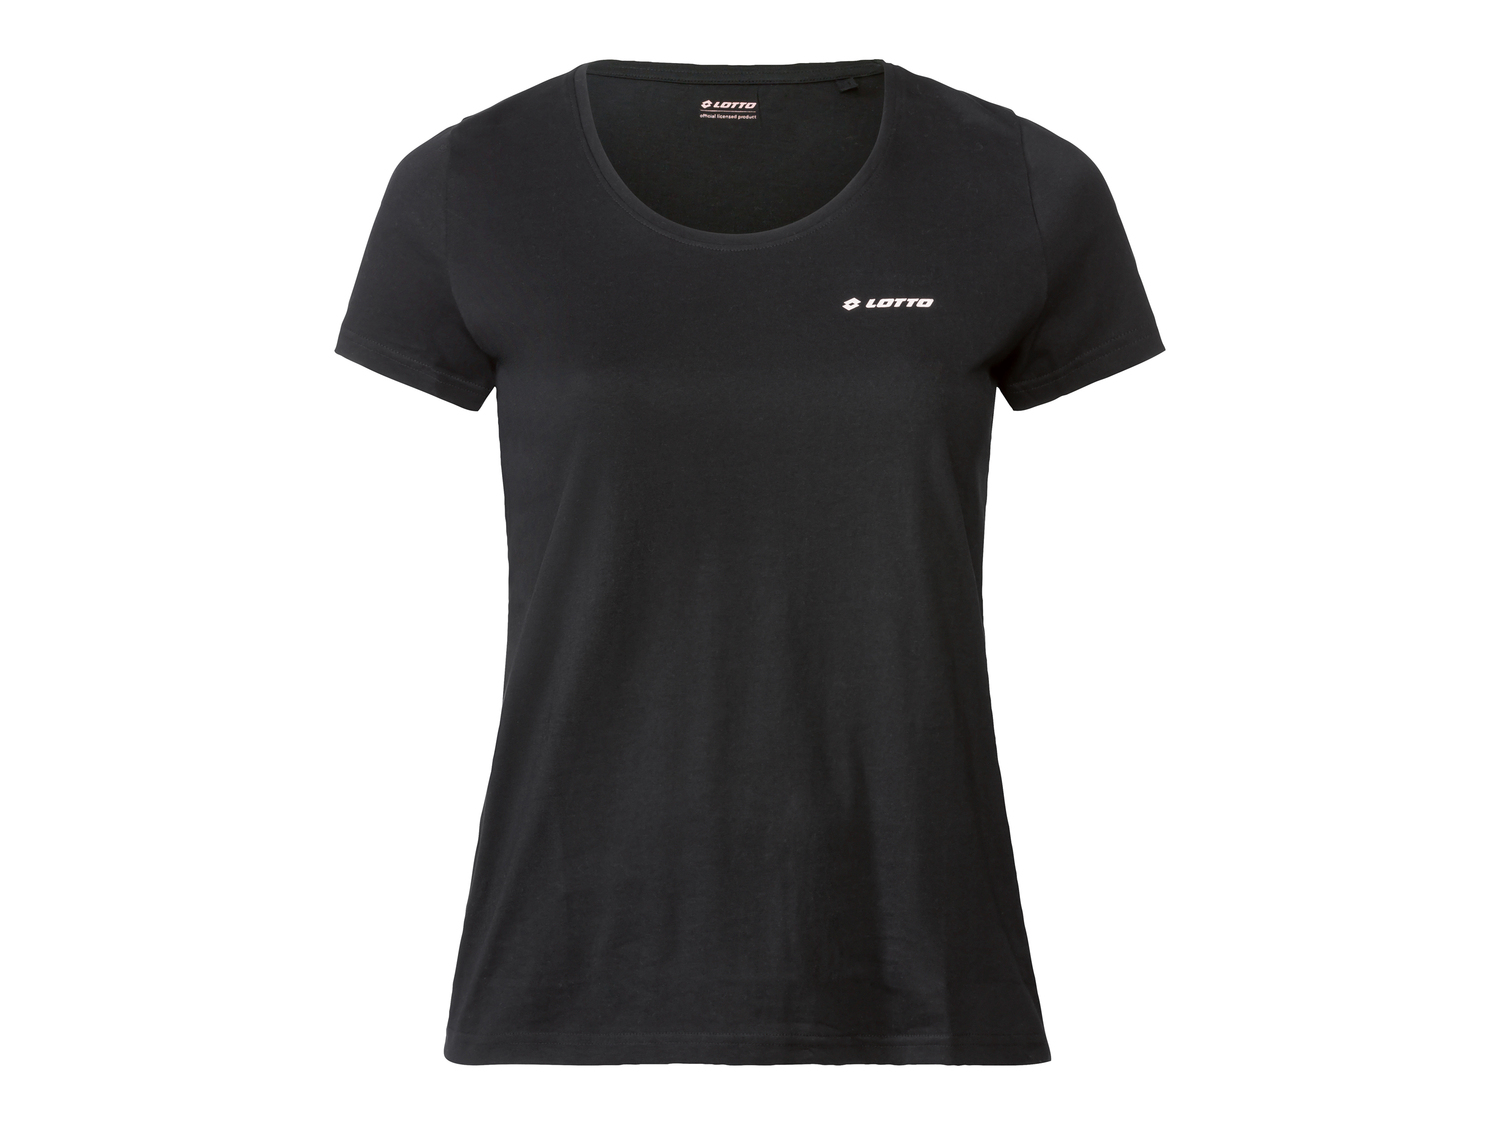 T-shirt da donna Lotto, prezzo 7.99 &#8364; 
Misure: S-L 
- -20%
Taglie disponibili

Caratteristiche

- ...